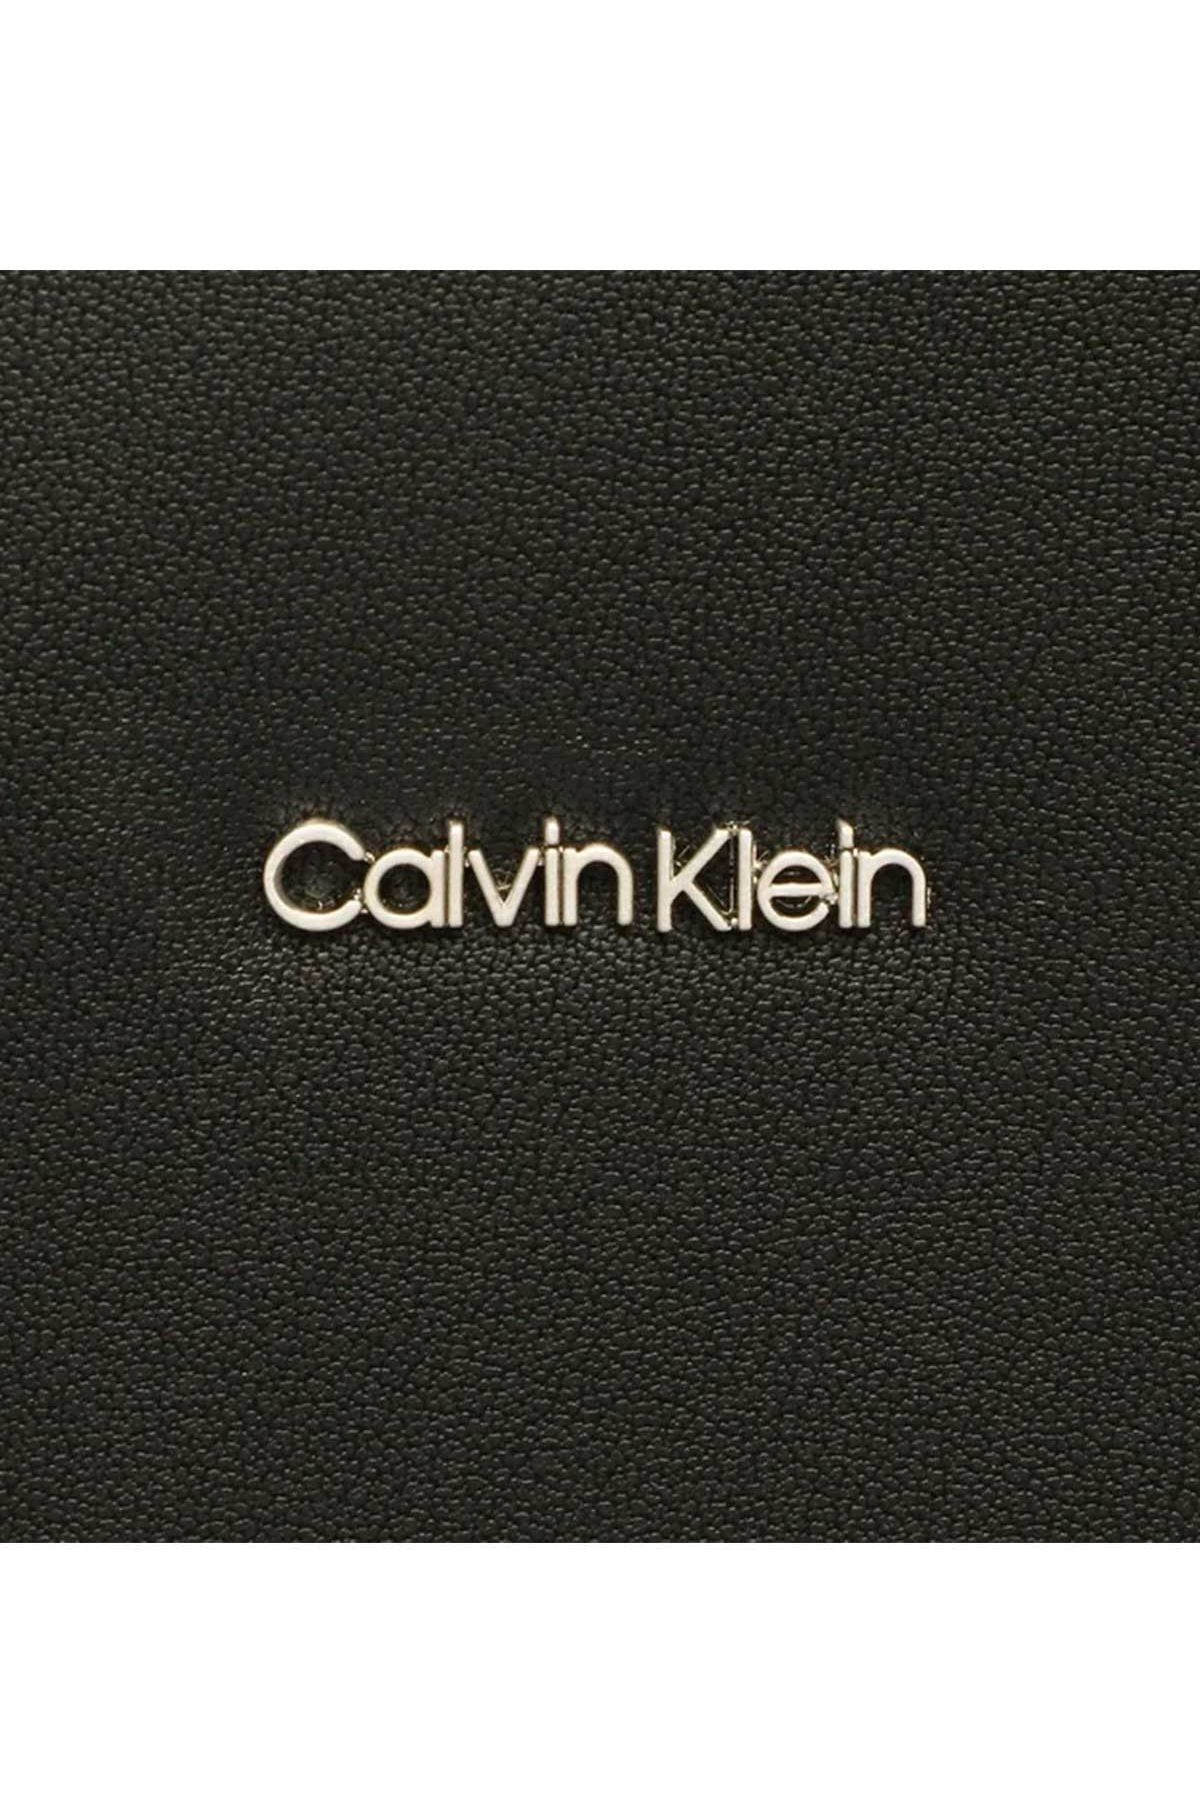 Buy Calvin Klein Women Key Chain Lipstick Red [K60K602067635] Online - Best  Price Calvin Klein Women Key Chain Lipstick Red [K60K602067635] - Justdial  Shop Online.